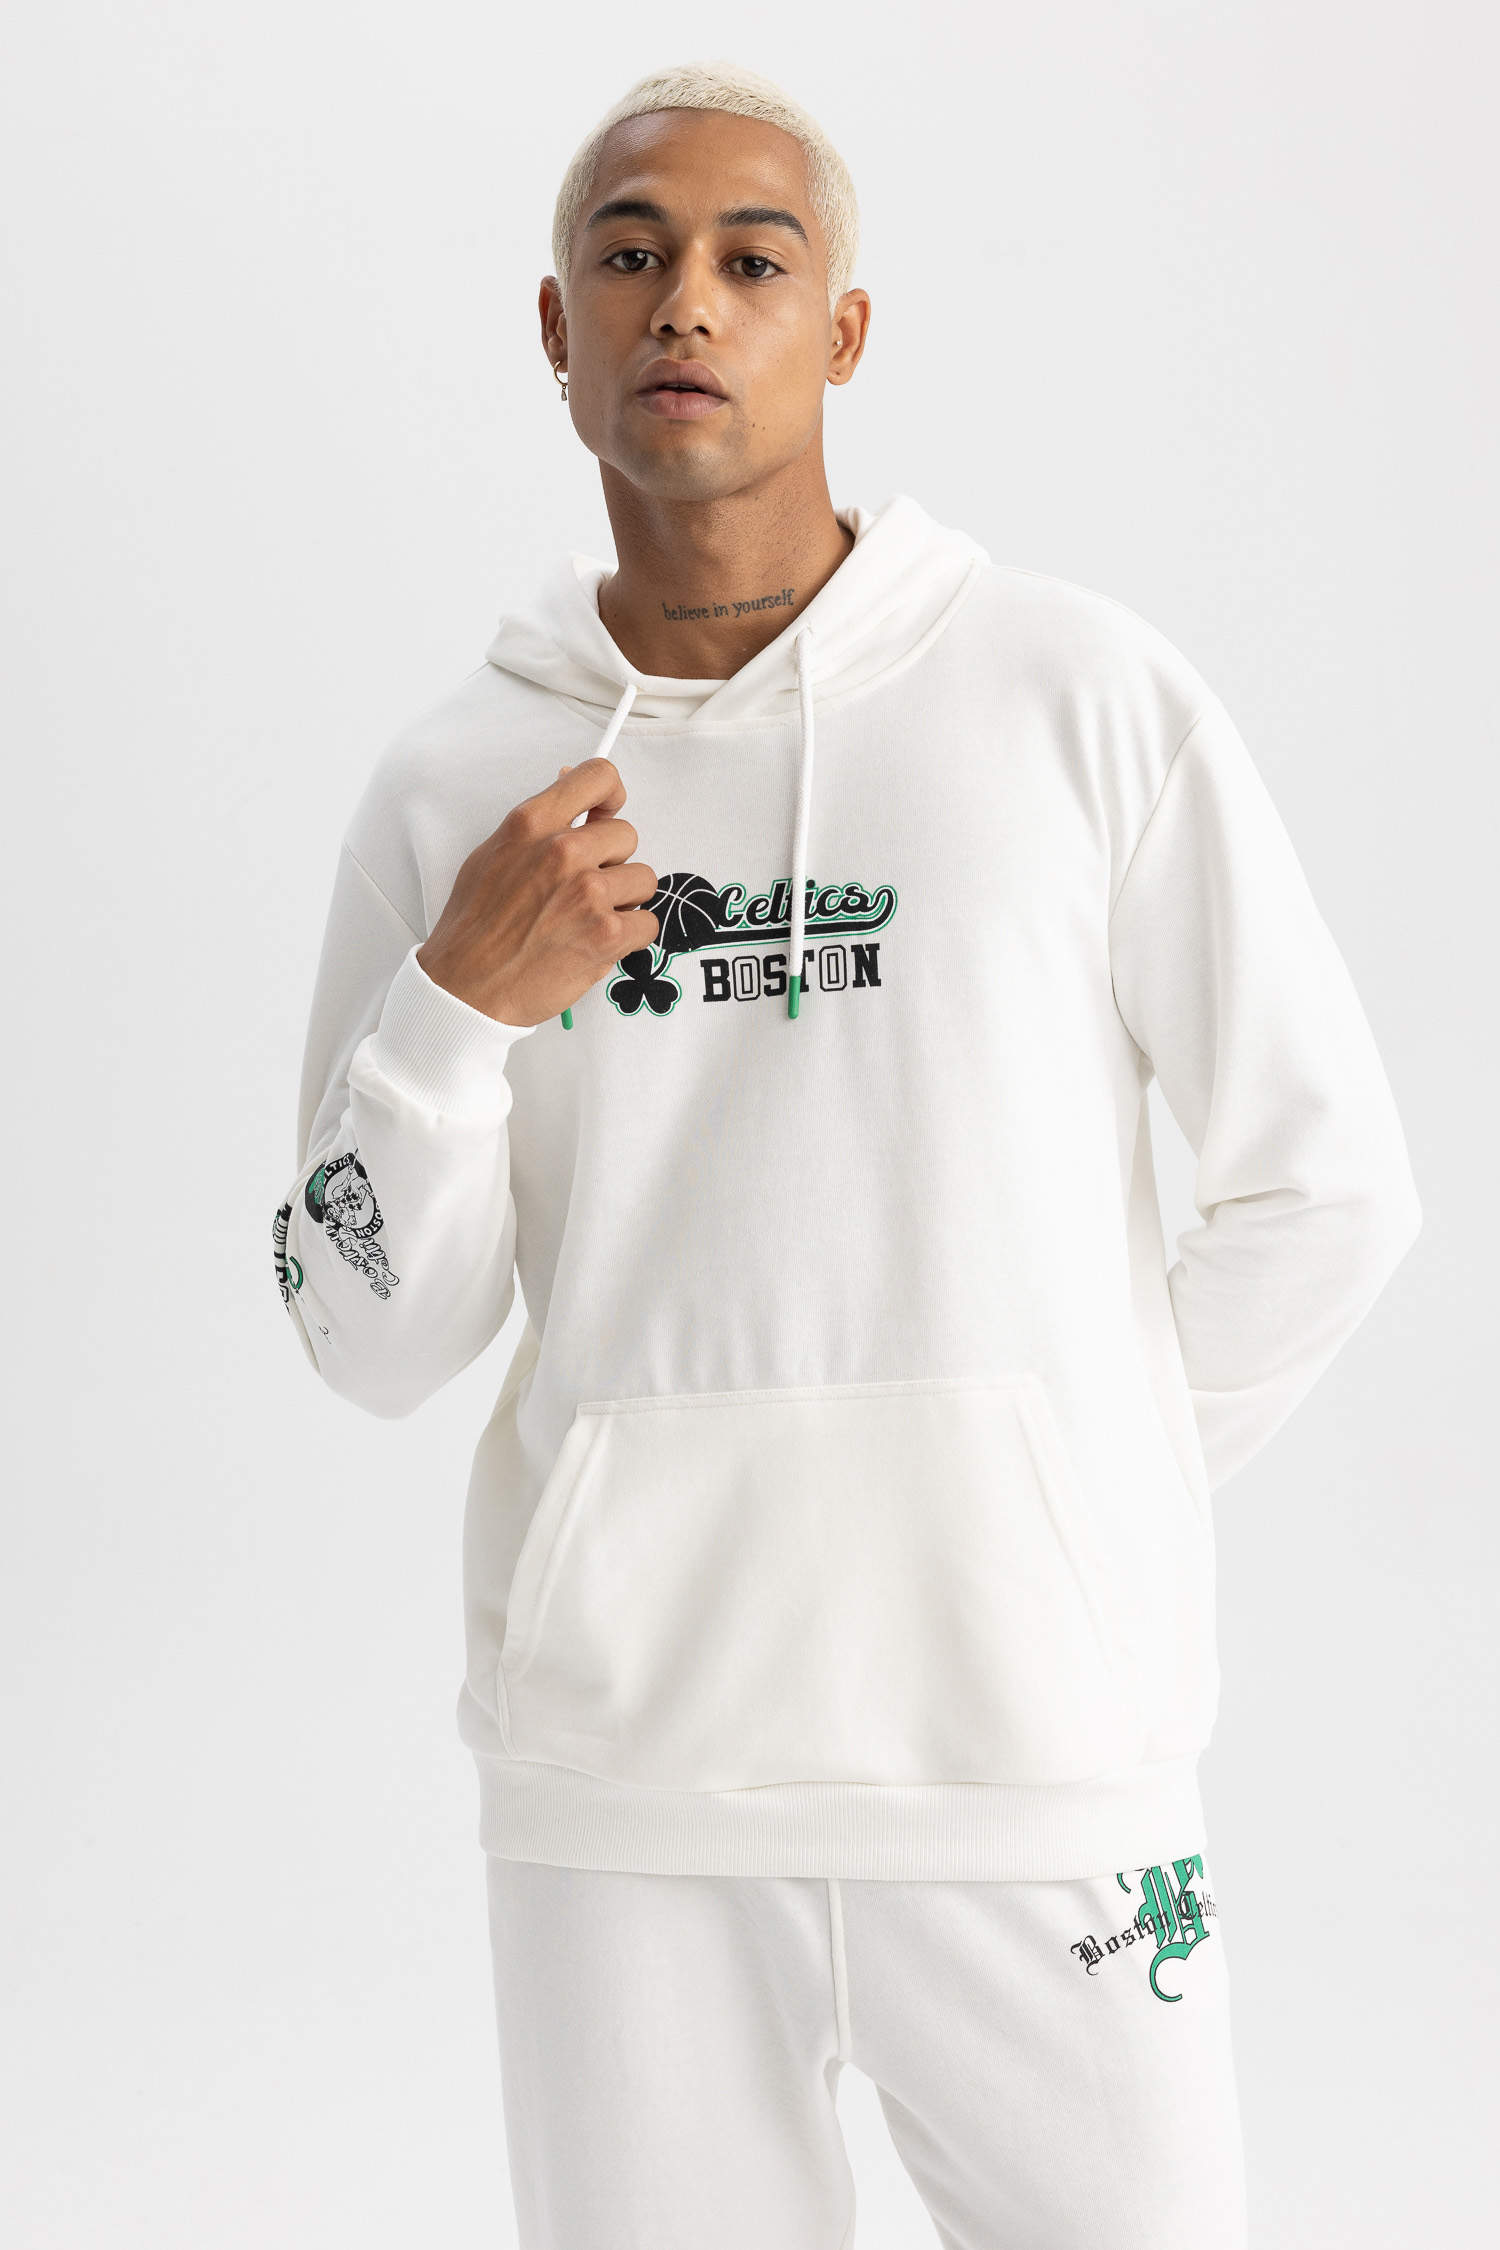 Standard Fit Boston Celtics Licensed Sweatshirt